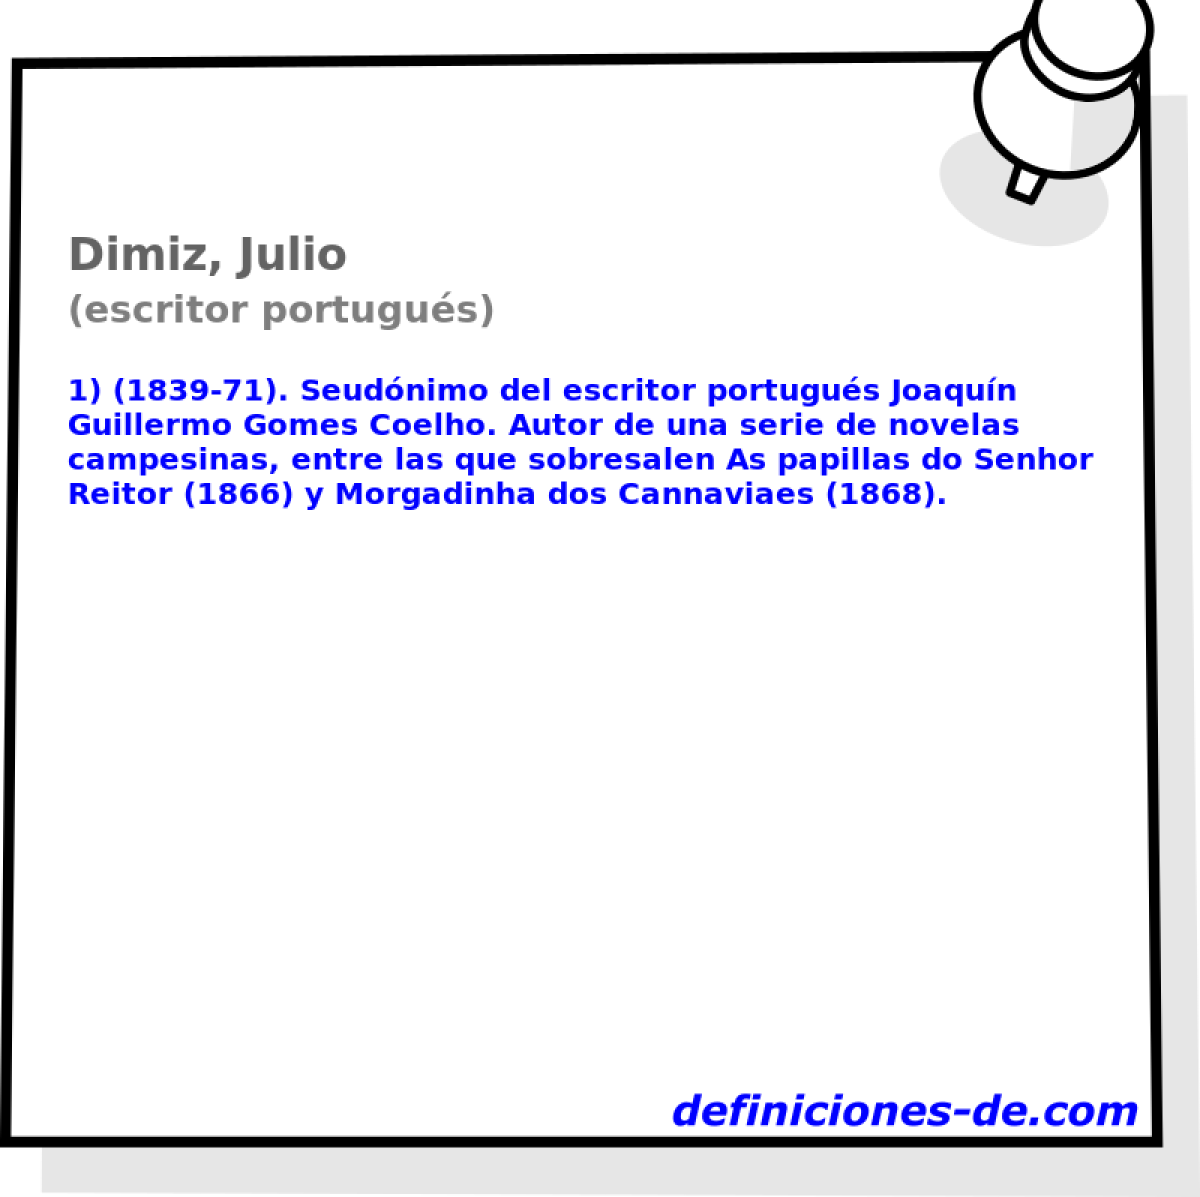 Dimiz, Julio (escritor portugus)